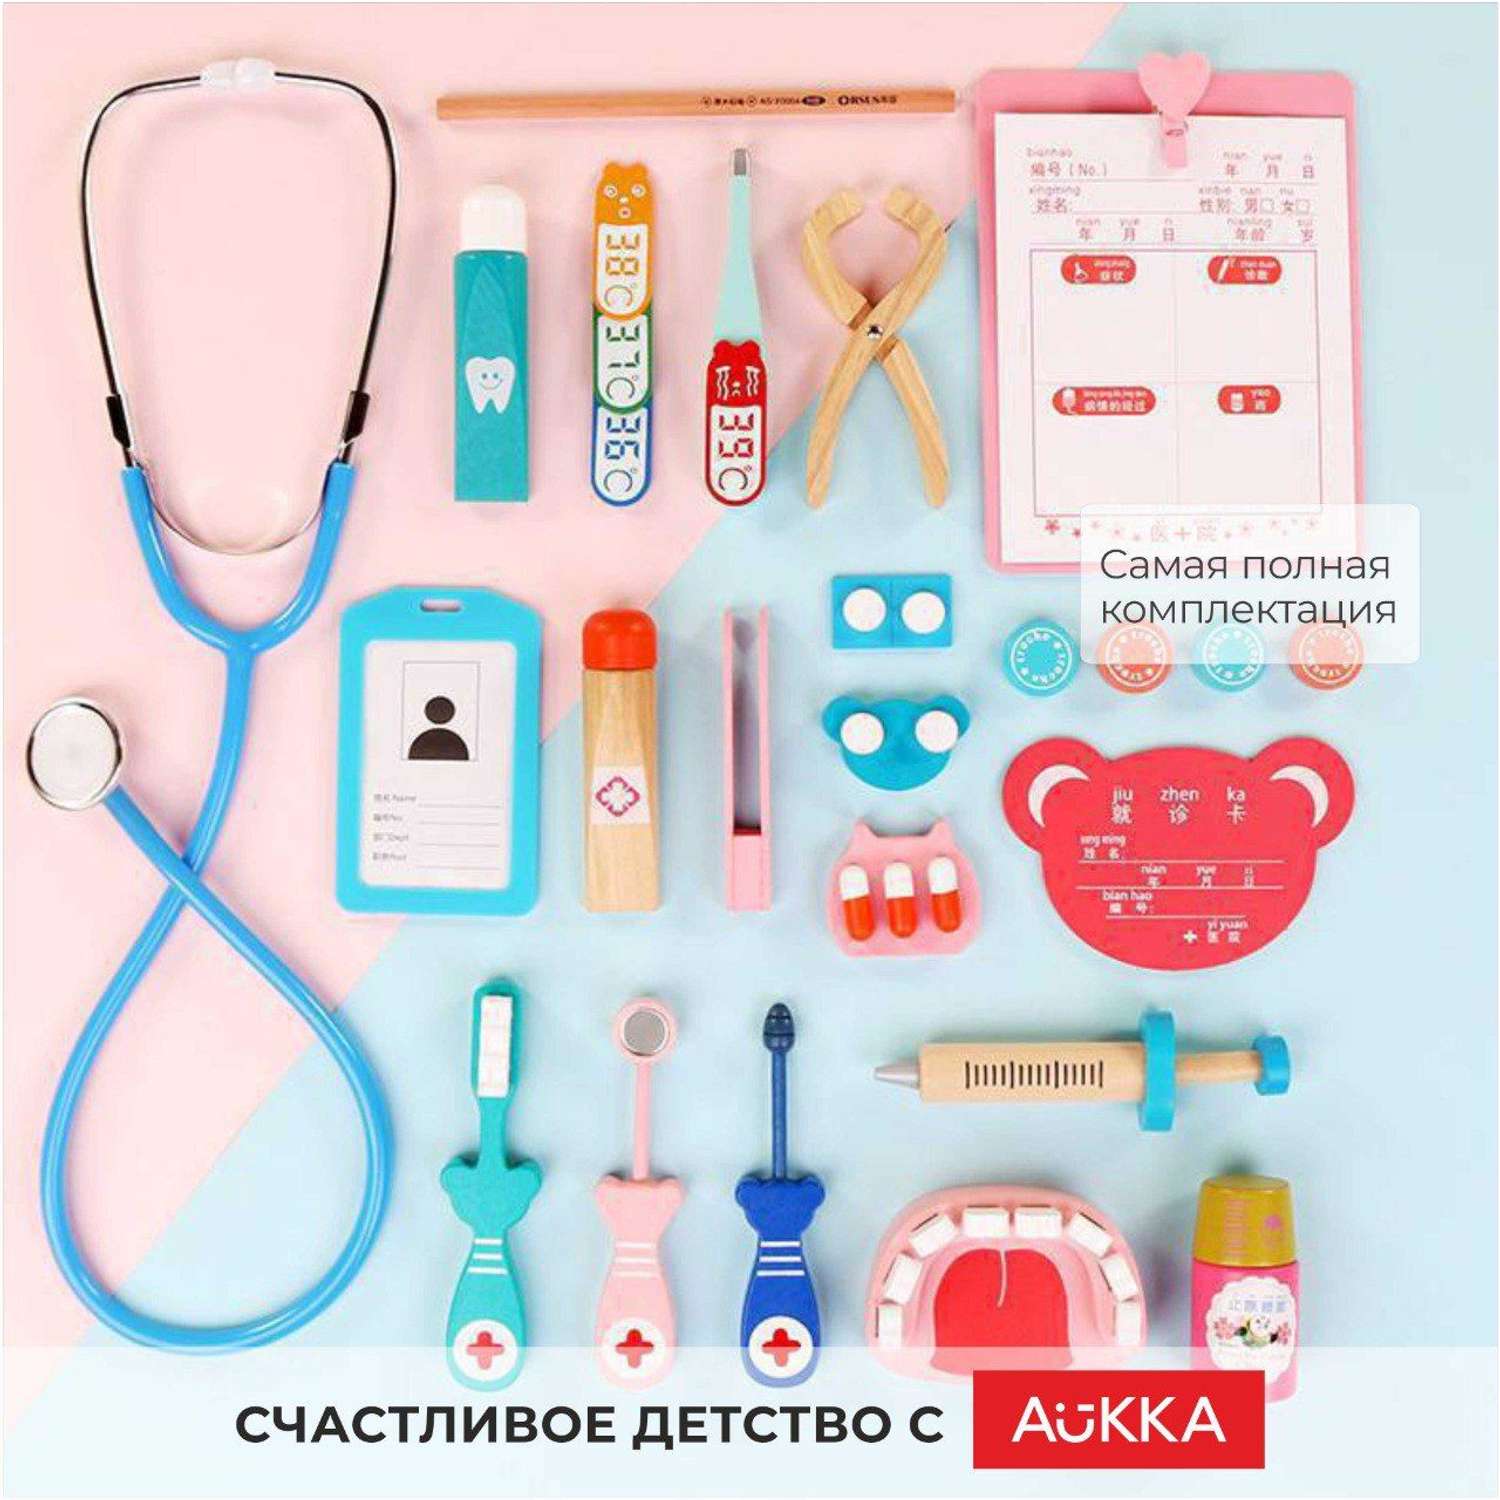 Игровой набор Стоматолог AUKKA Детские деревянные медицинские инструменты в сумке - фото 5